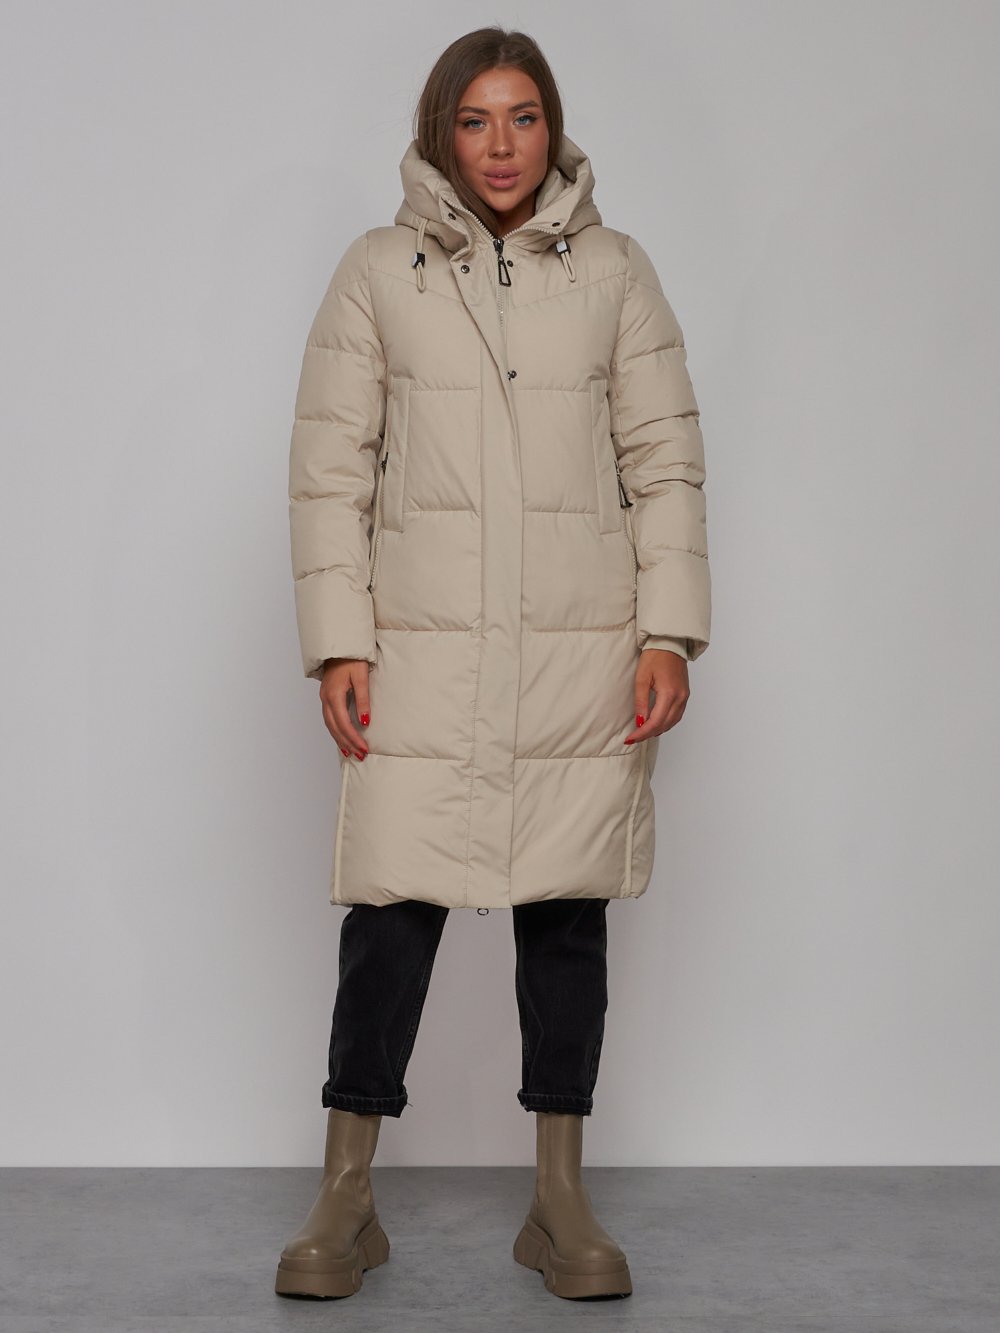 Пальто утепленное молодежное зимнее женское бежевого цвета 52328B